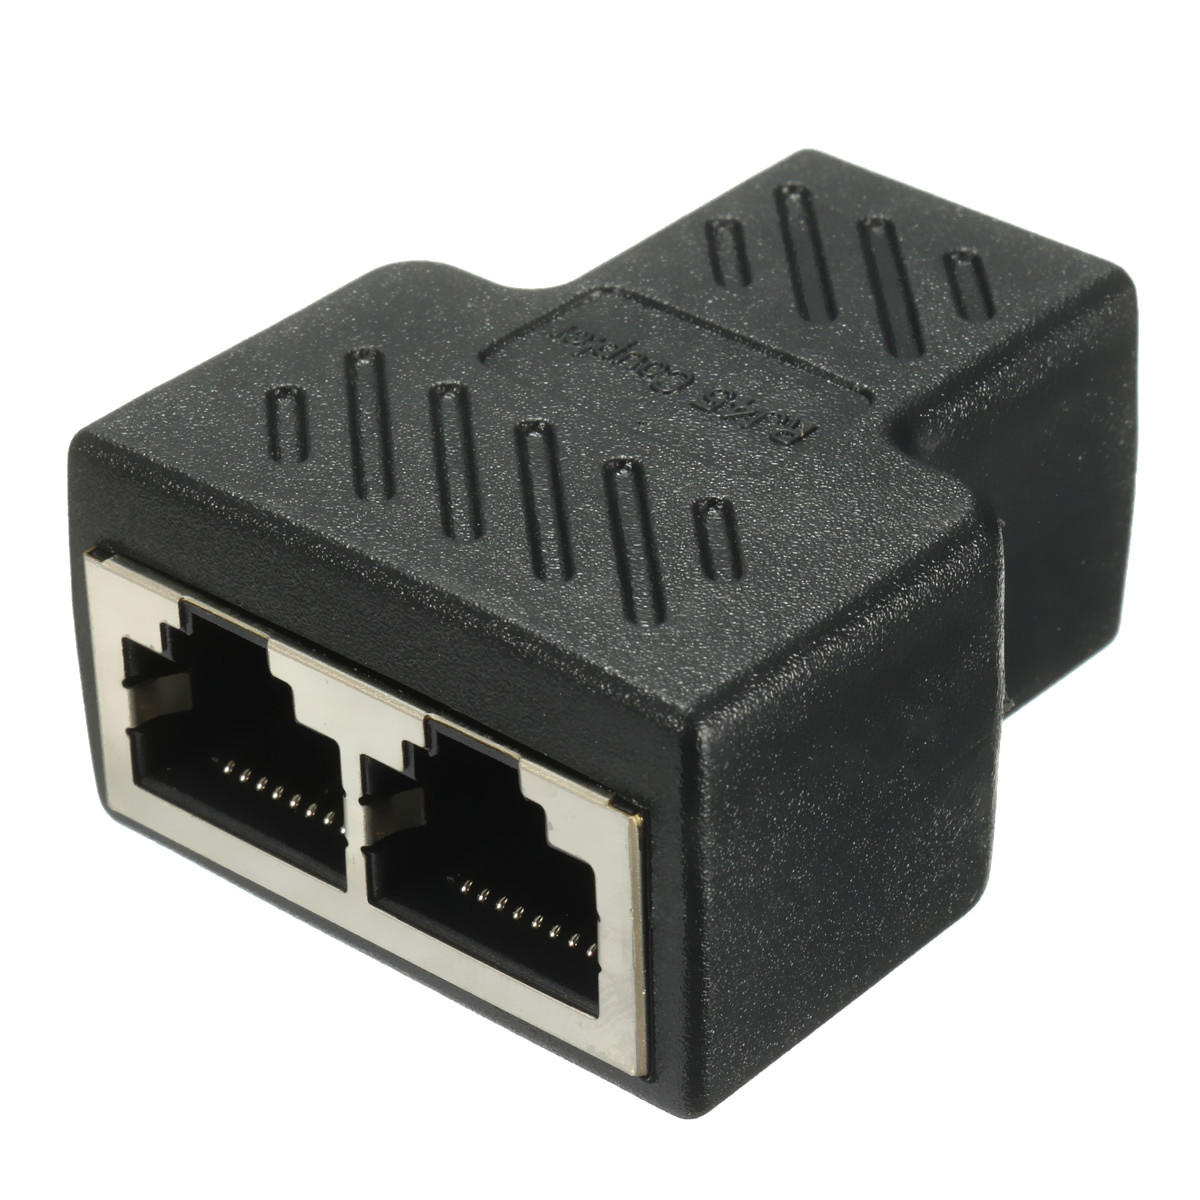 

RJ45 1 To 2 Splitter Connector LAN Ethernet Network RJ45 Splitter Extender Plug Adapter Network Connector Converter